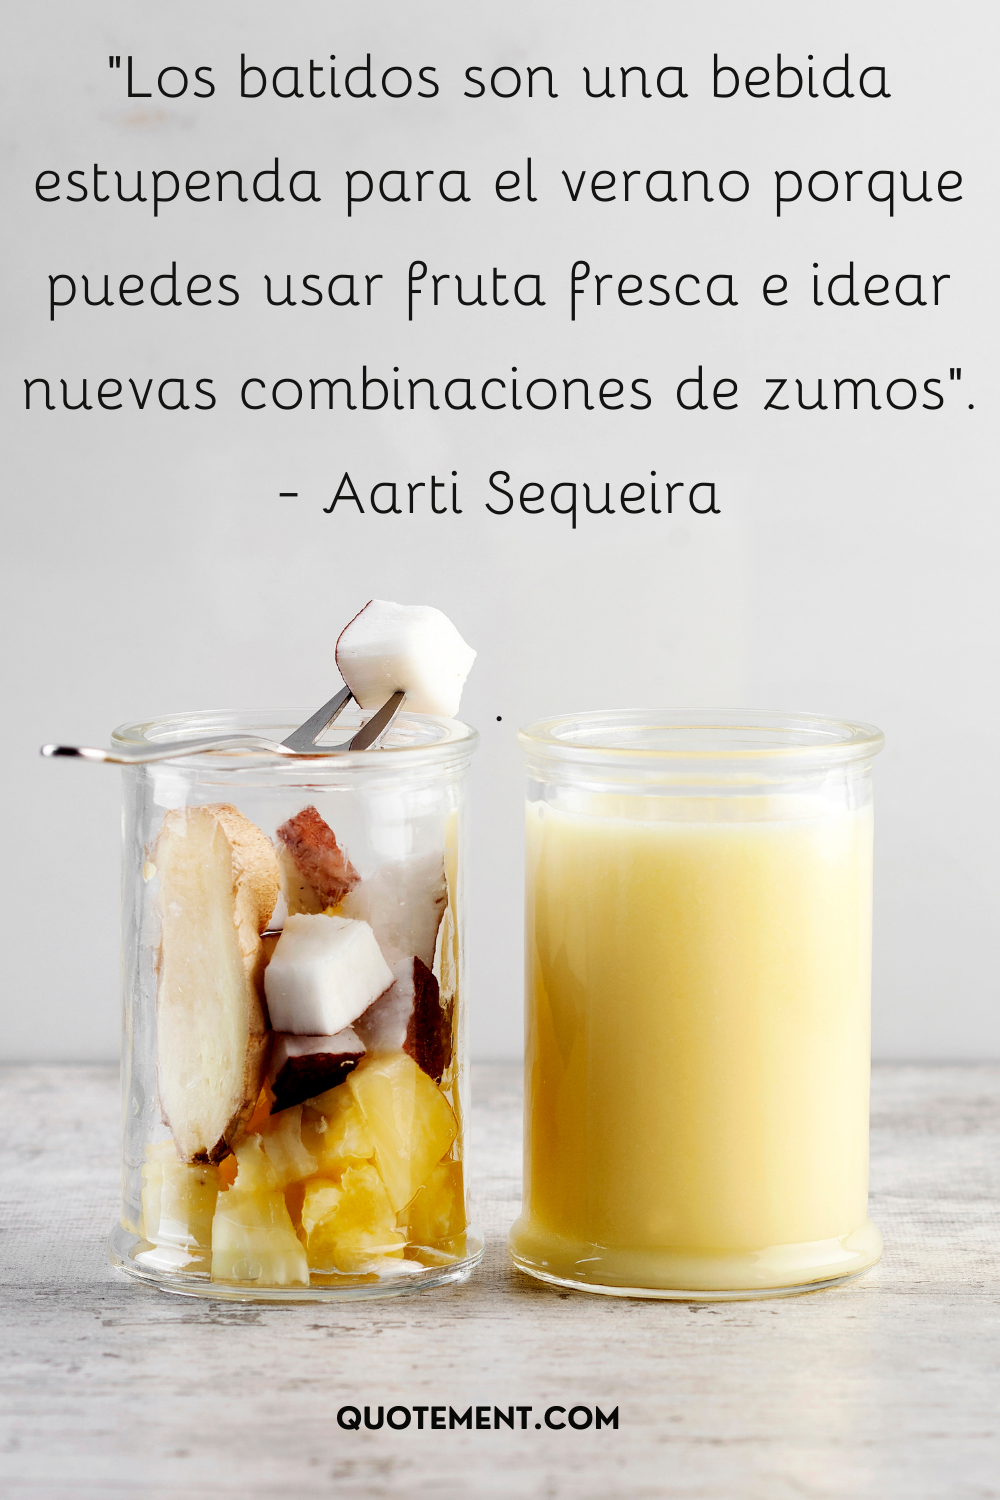 "Los smoothies son una bebida estupenda para el verano porque puedes usar fruta fresca e idear nuevas combinaciones de zumos". - Aarti Sequeira